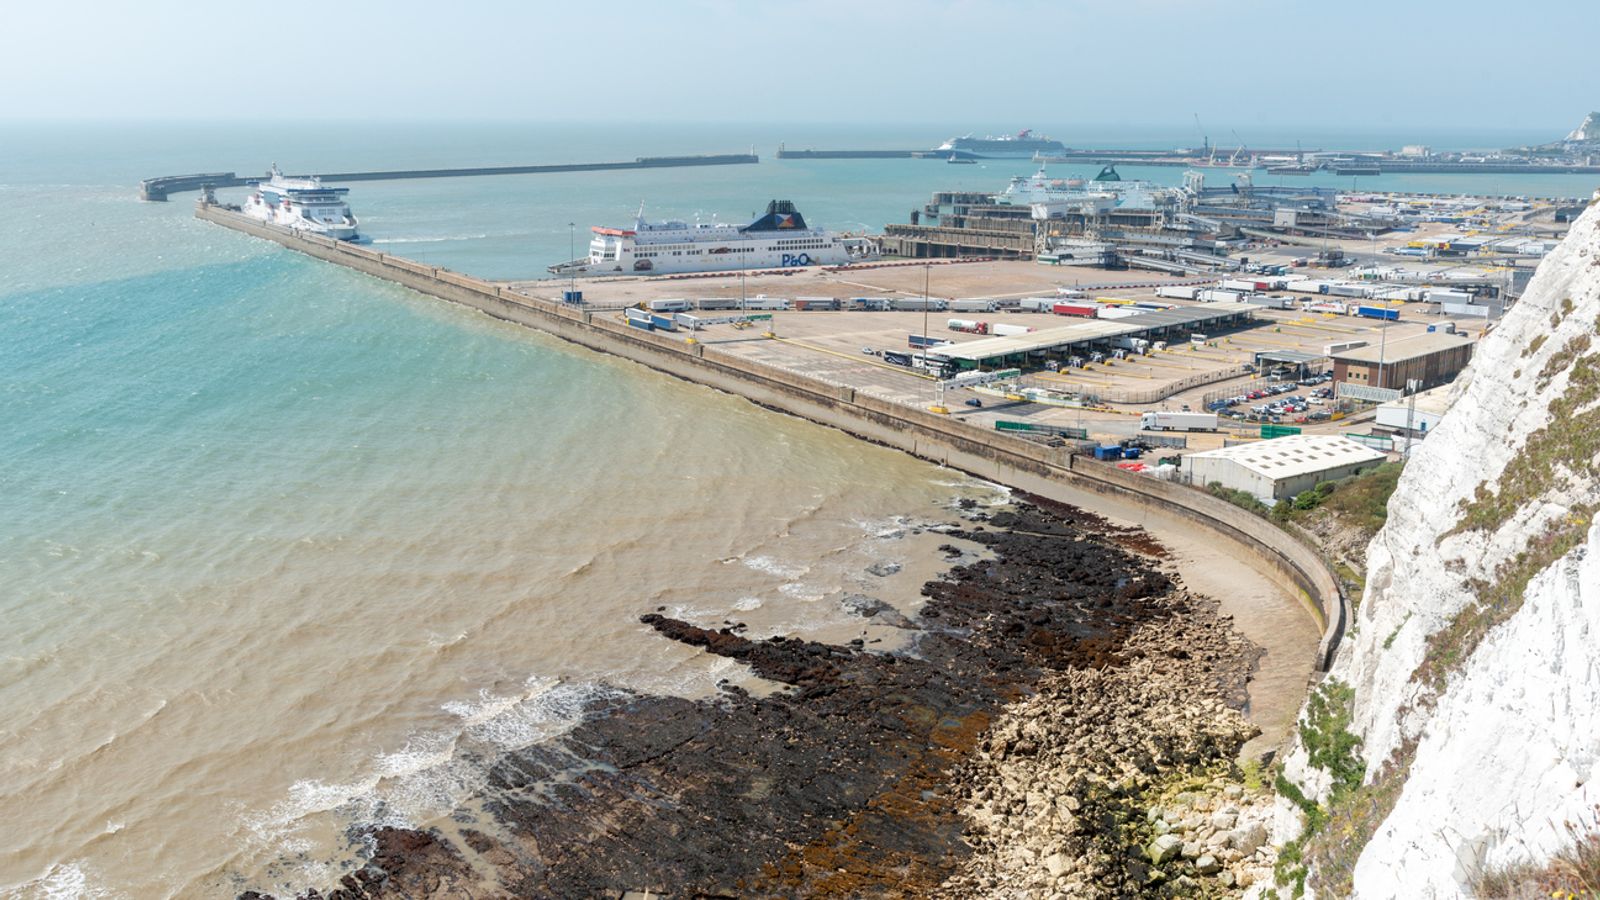 La police arrête un homme à Douvres au lendemain de la découverte du corps d’une migrante sur la plage de Sangatte, près de Calais |  Nouvelles du monde